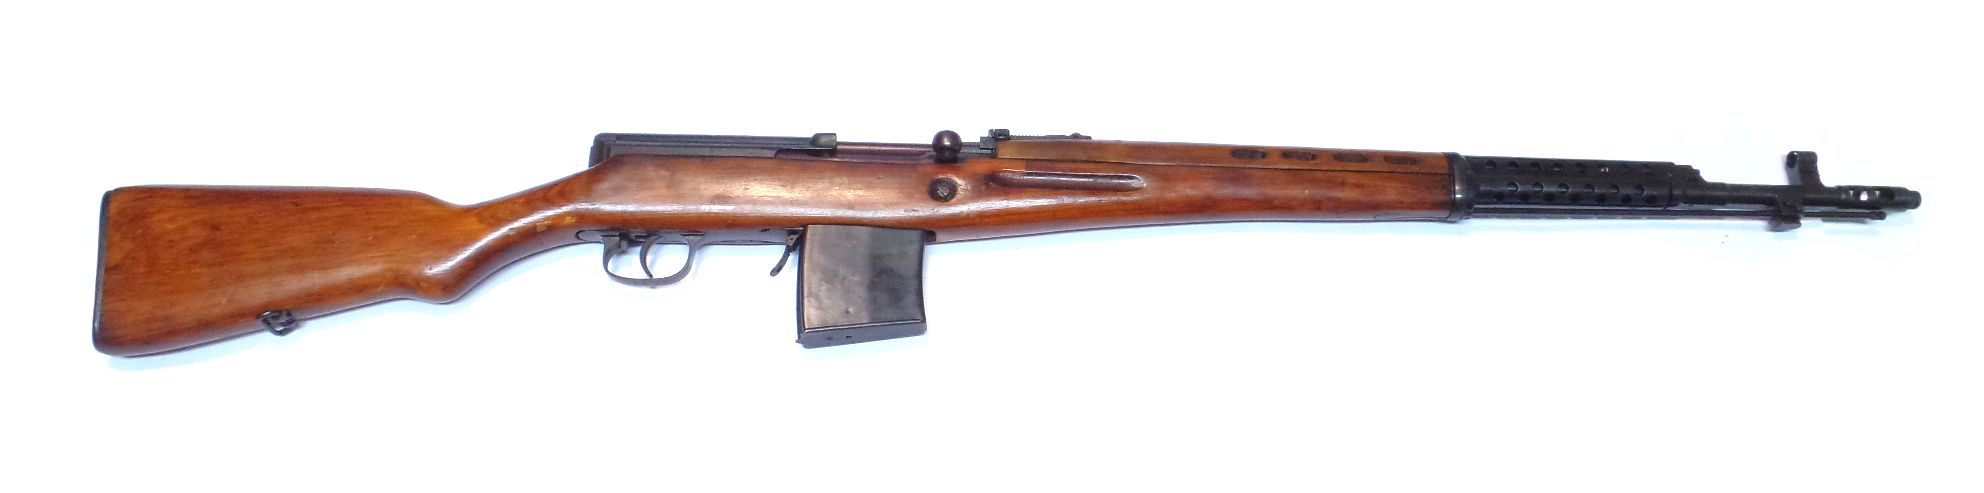 TOKAREV SVT40 calibre 7.62x54R